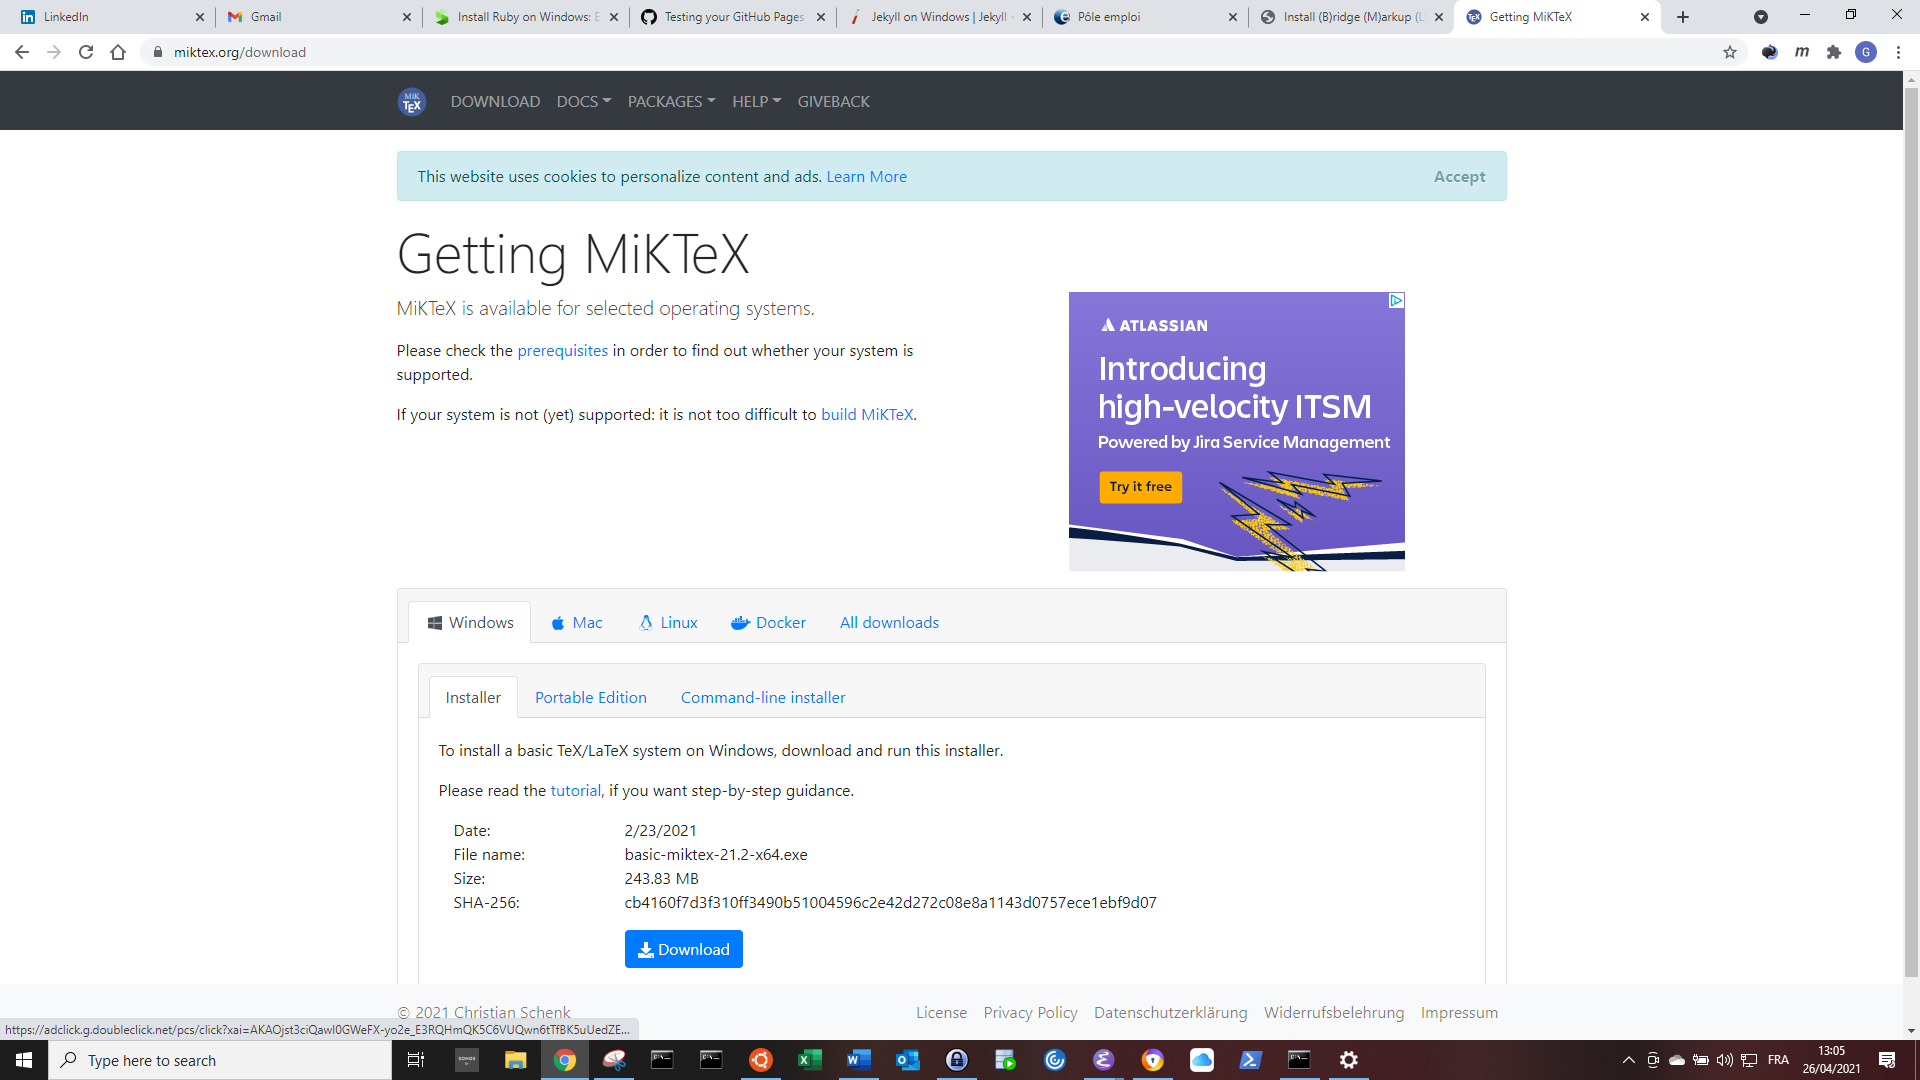 MiKTeX download page